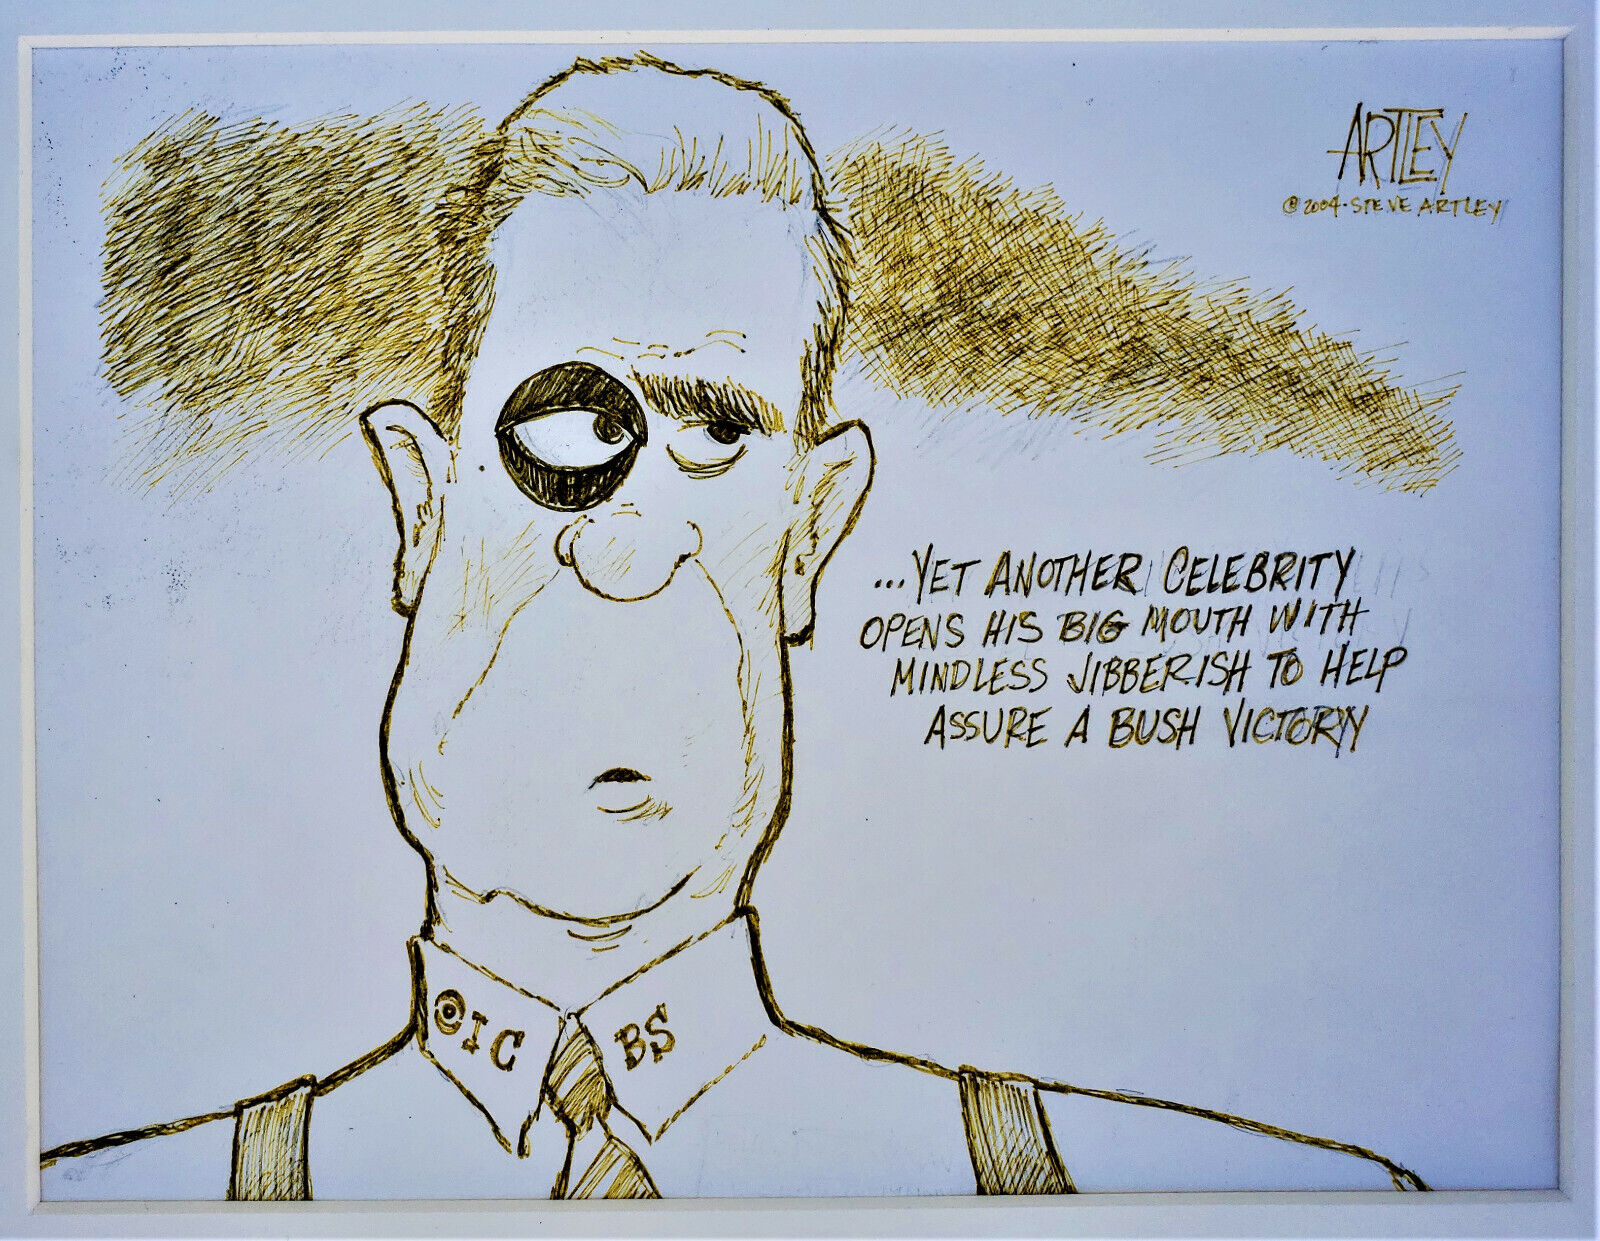 STEVE ARTLEY Original SIGNED Political Cartoon Publlished GEORGE BUSH DAN RATHER